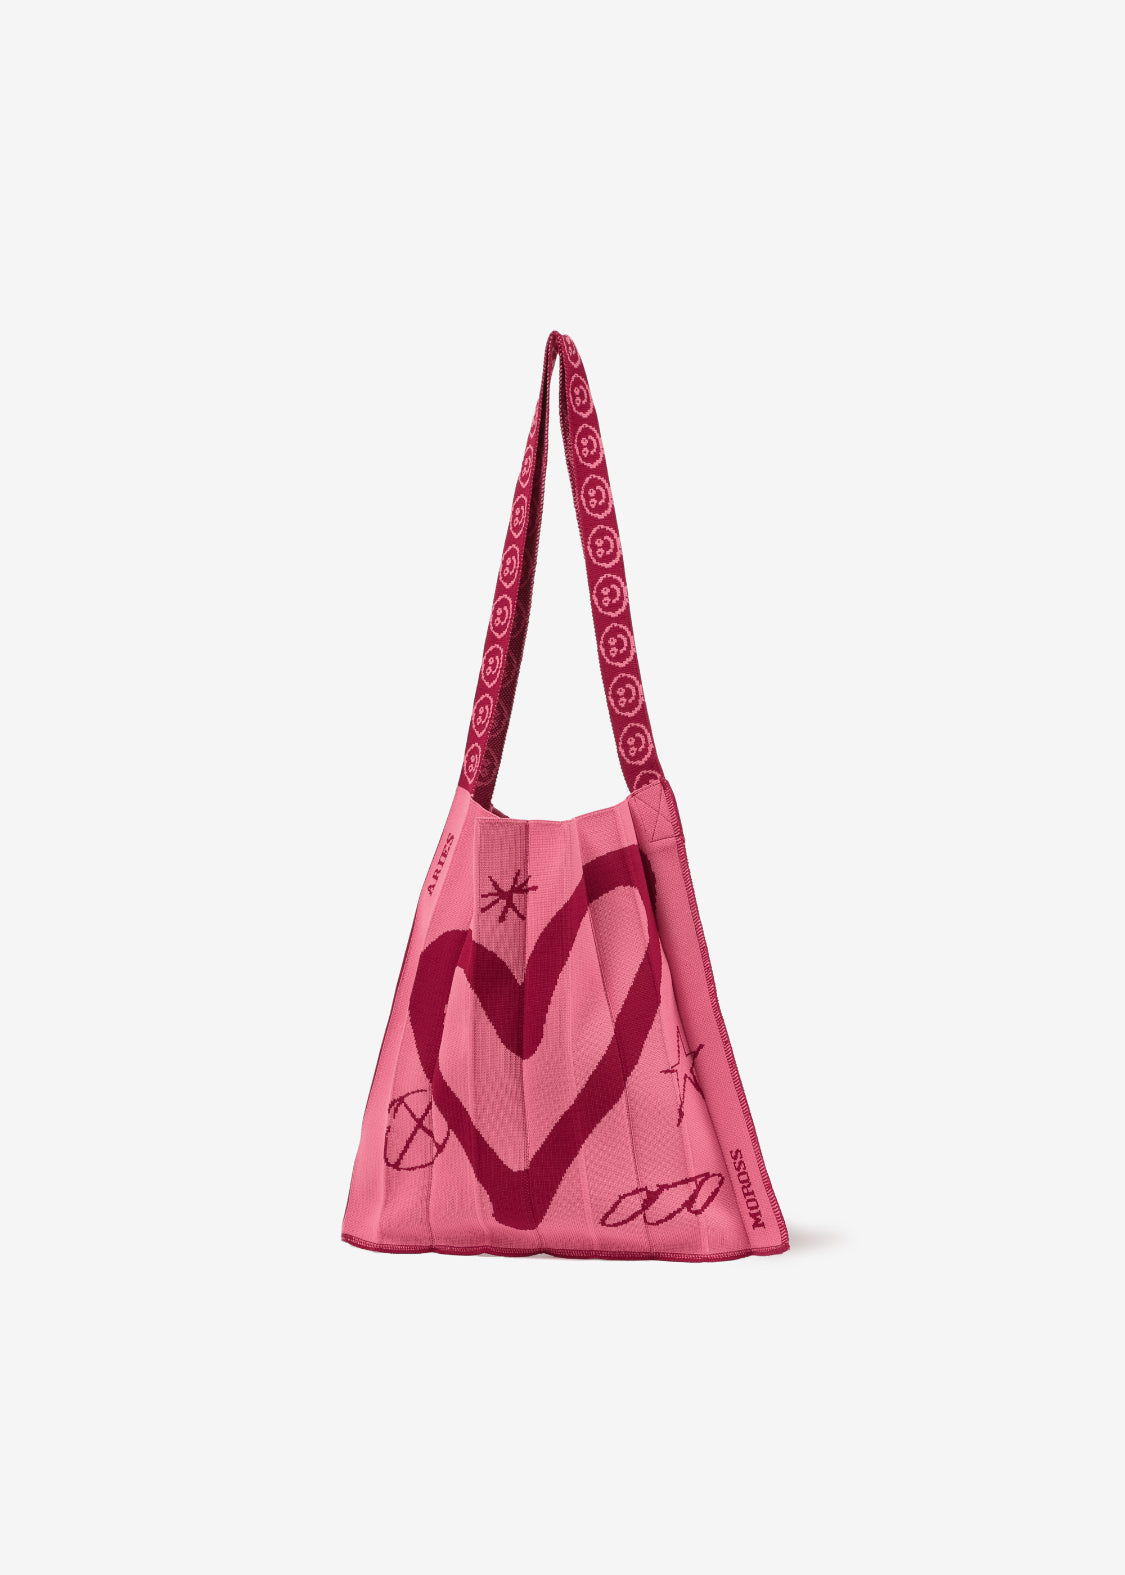 Aries Moross Knitty Bag (Heart)